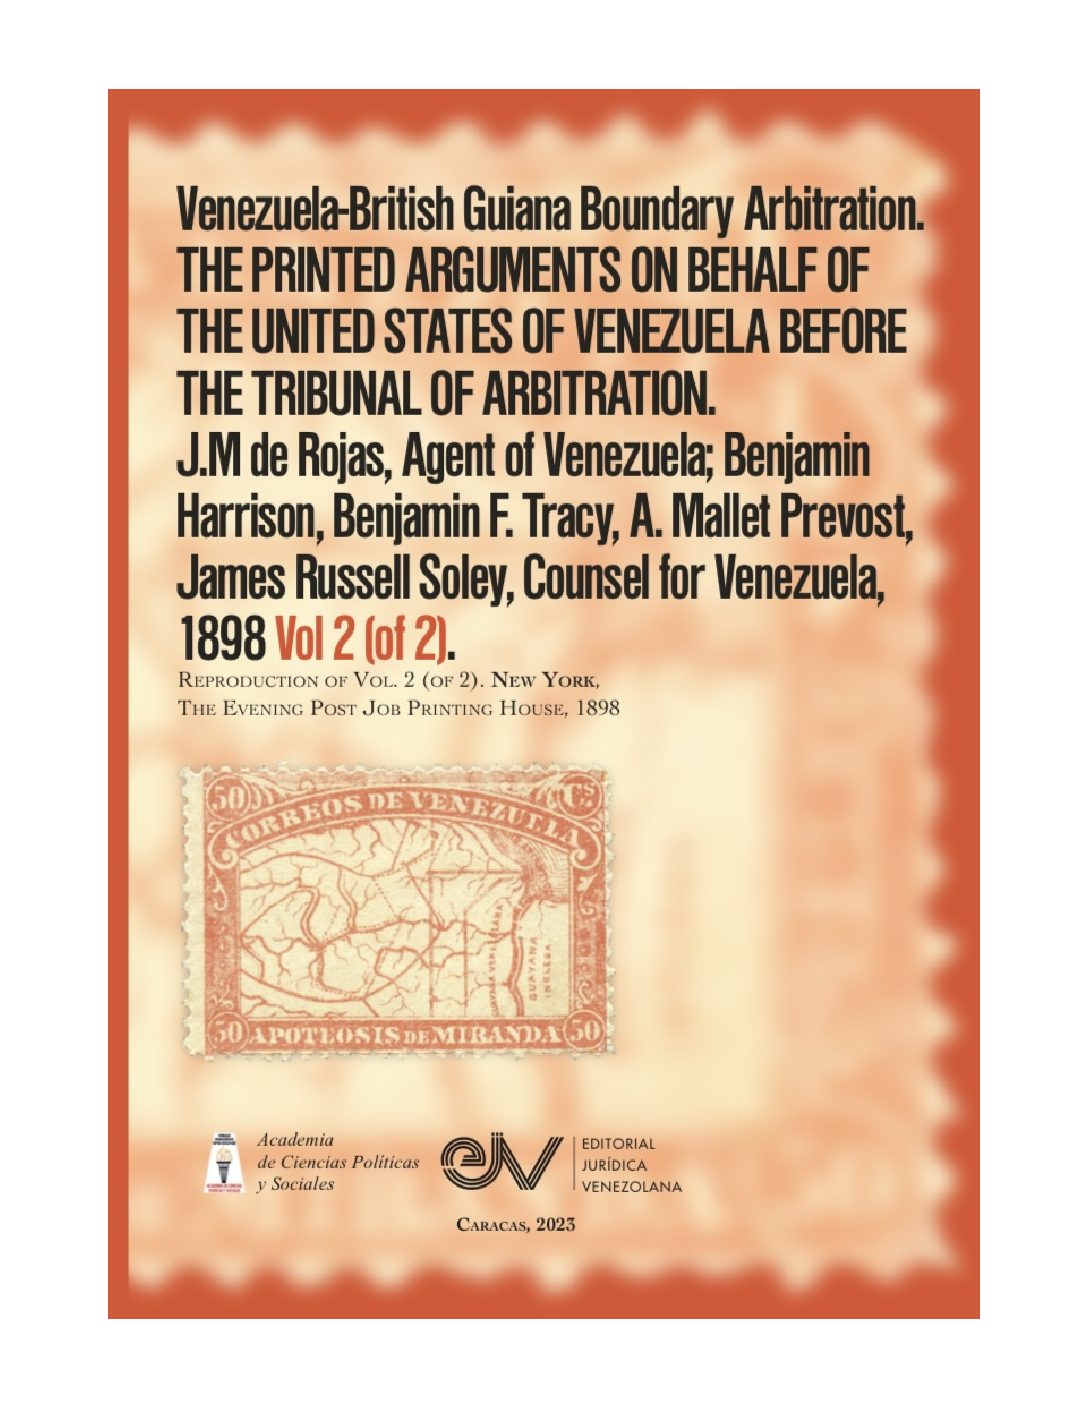 Disponible a texto completo el sexto libro de la serie de la Academia de Ciencias Políticas y Sociales sobre controversia del Esequibo: Venezuela-British Guiana Boundary Arbitration. Vol. 2